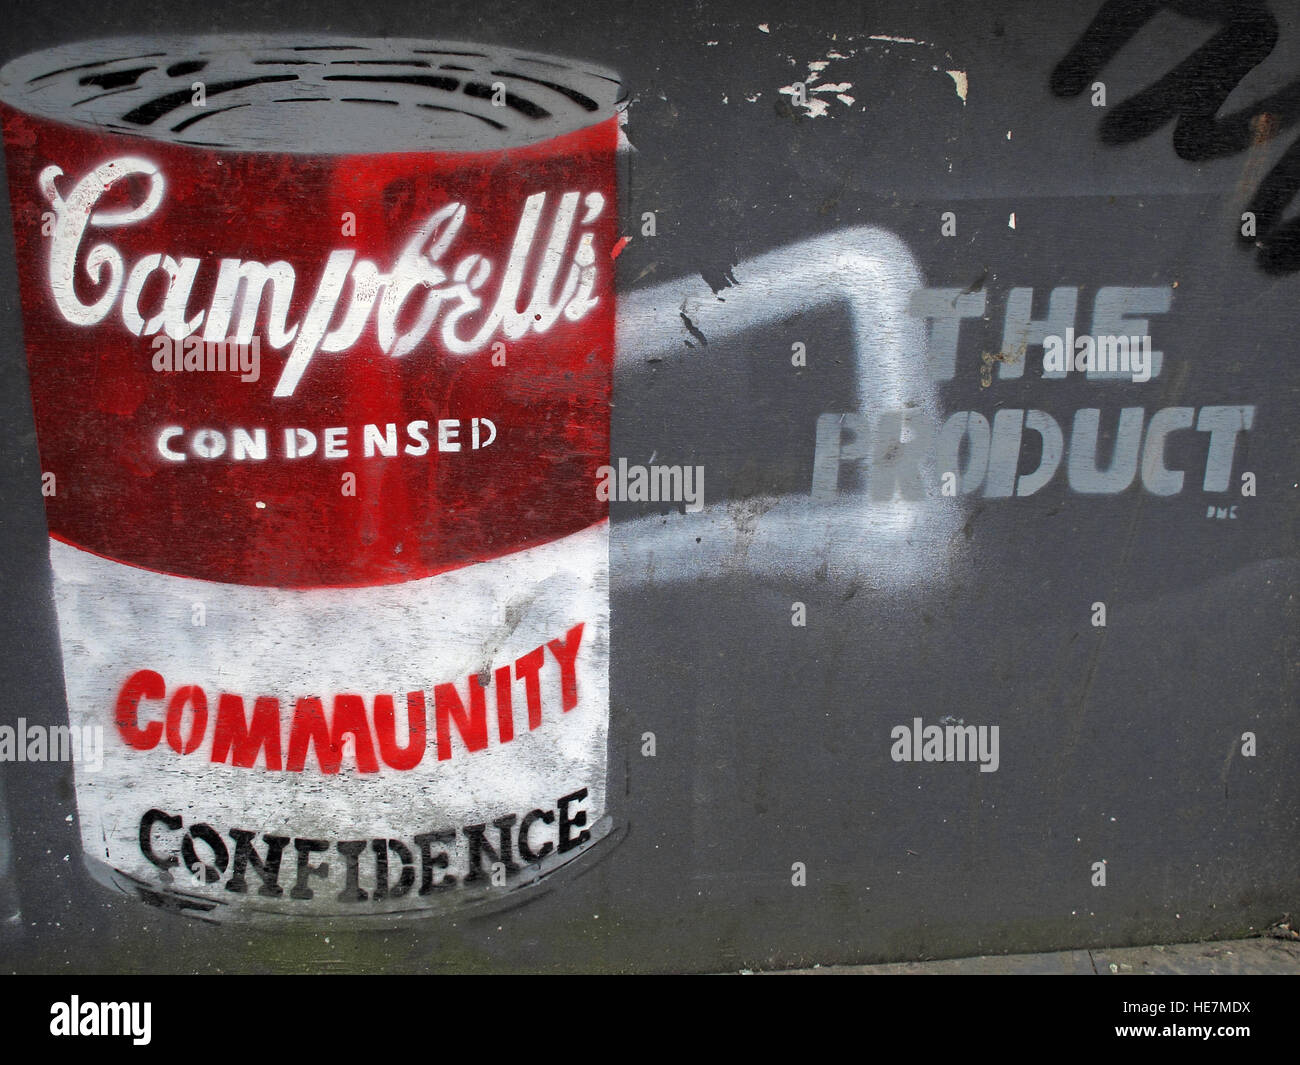 Confiance communautaire, Campbells, boîte à soupe, graffiti à Belfast Garfield St Centre-ville, Irlande du Nord, Royaume-Uni Banque D'Images